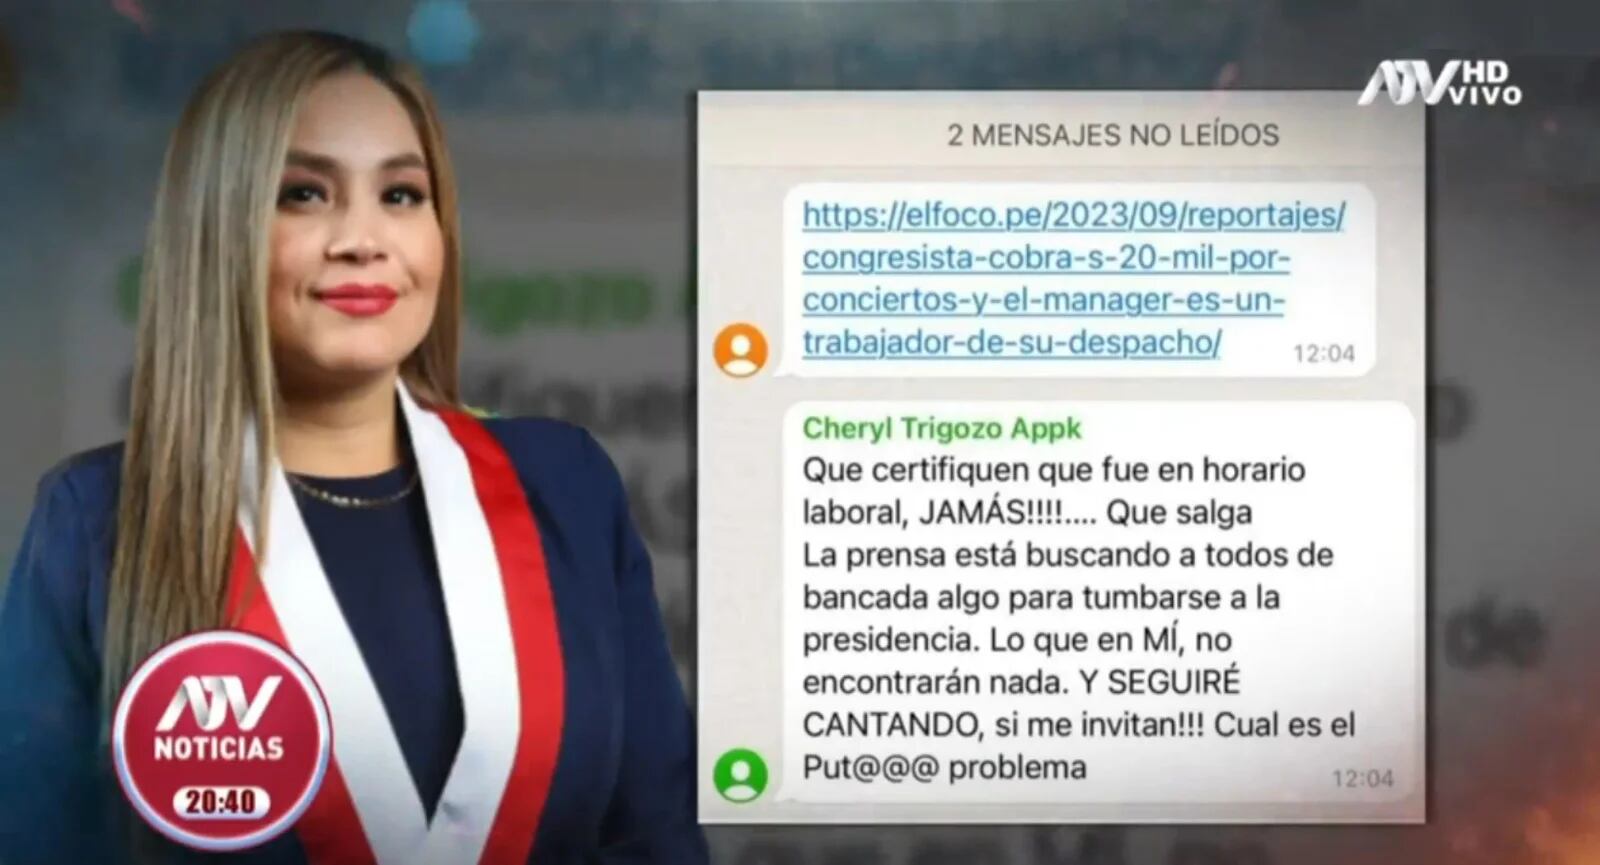 La respuesta vulgar de la congresista Cheryl Trigozo ante acusaciones de su doble rol como cantante de cumbia